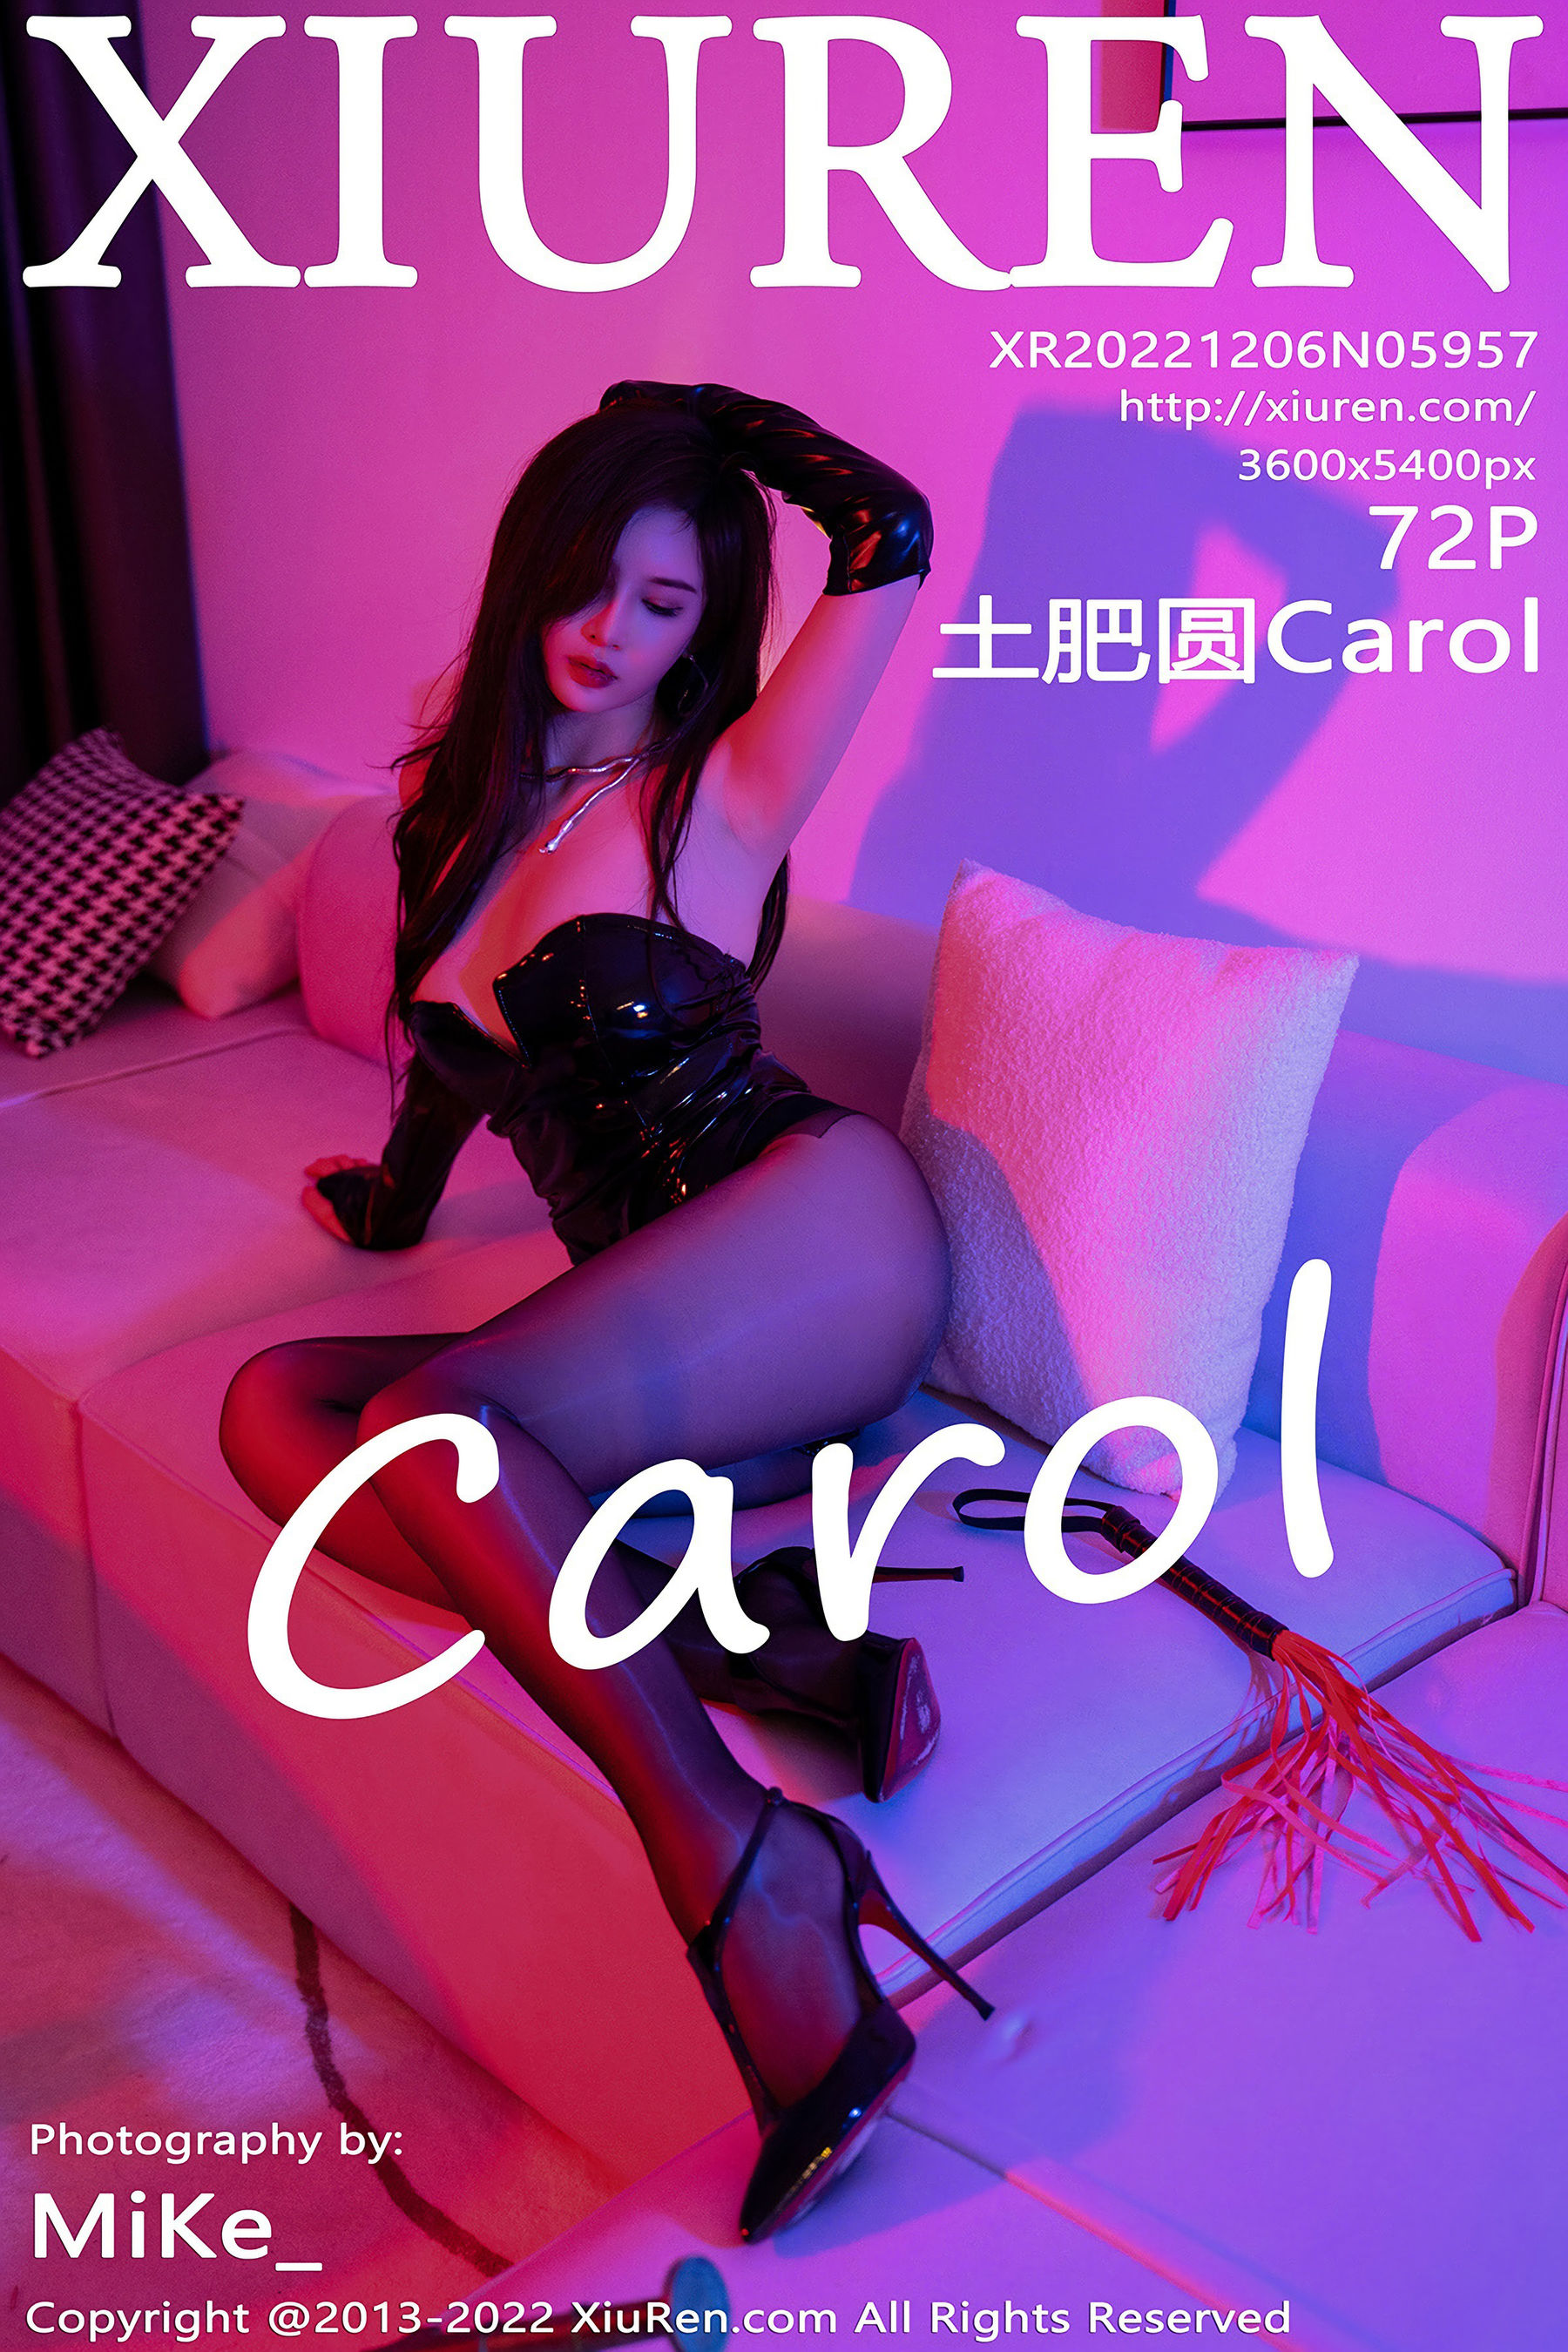 [秀人XiuRen] No.5957 土肥圆Carol/(73P)